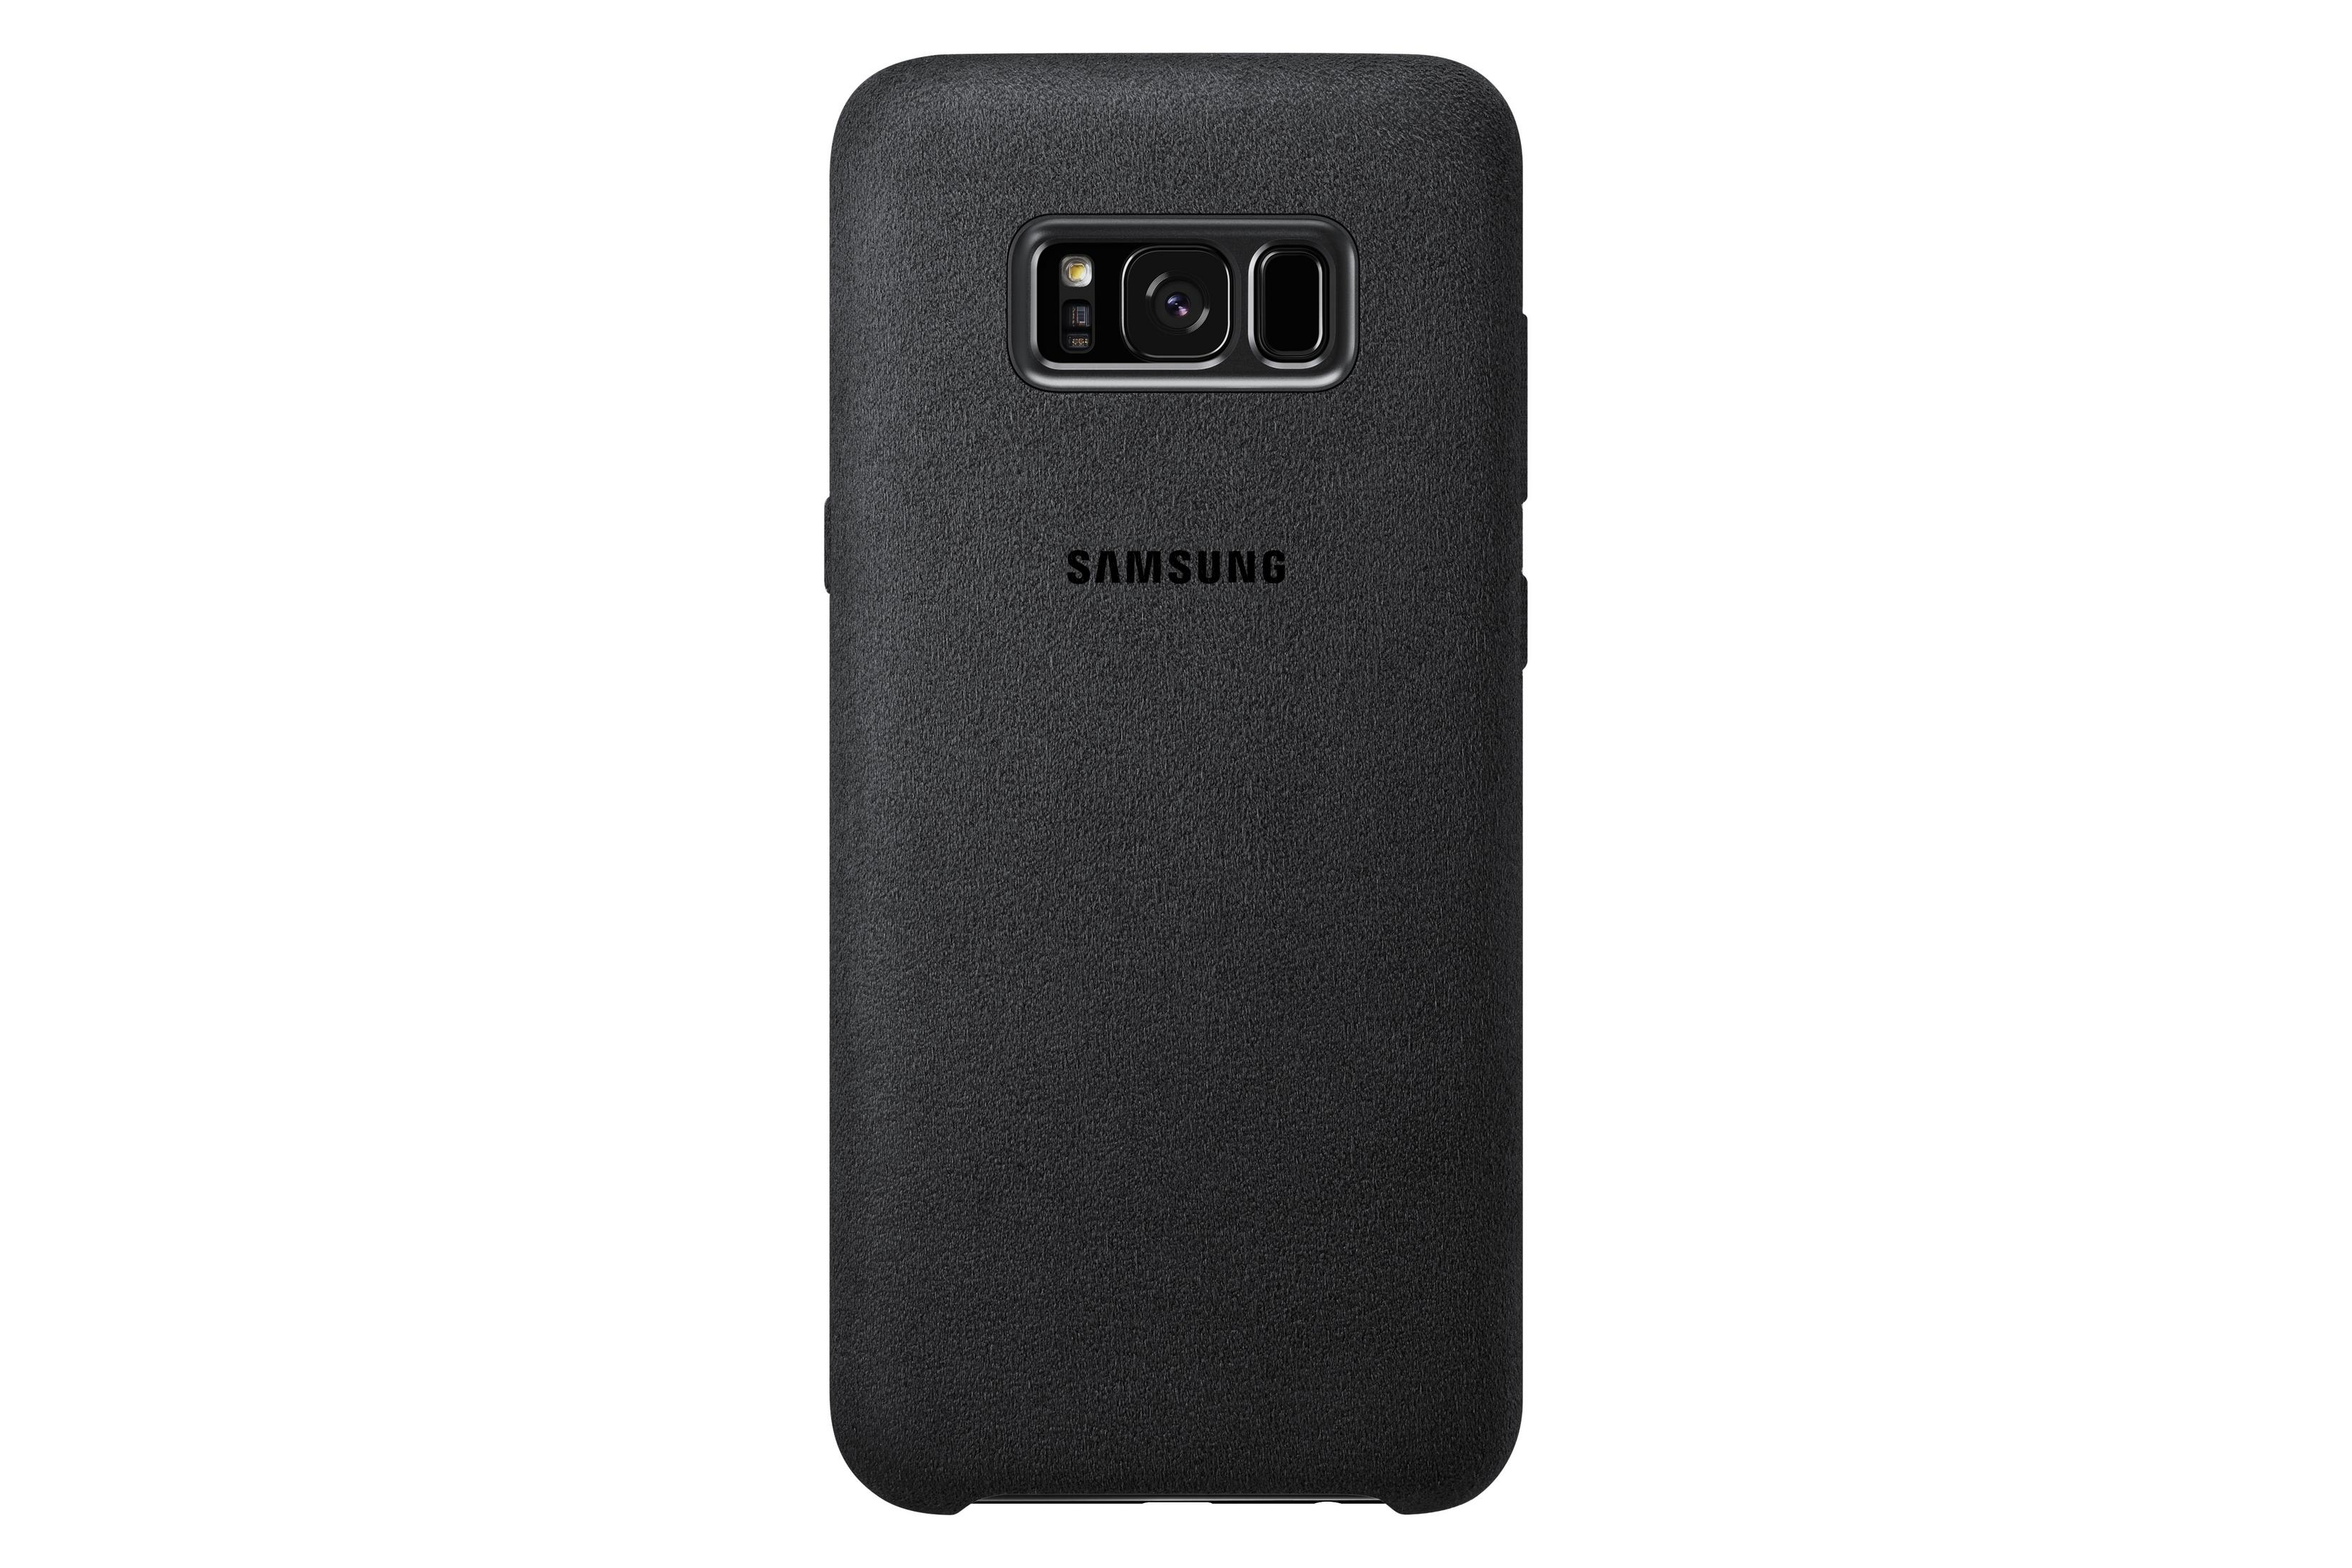 Samsung, Backcover, EF-XG955ASEGWW S8+ GAL. Gray Dark ALCANTARA SILBERGRAU, COVER SAMSUNG Galaxy S8+,